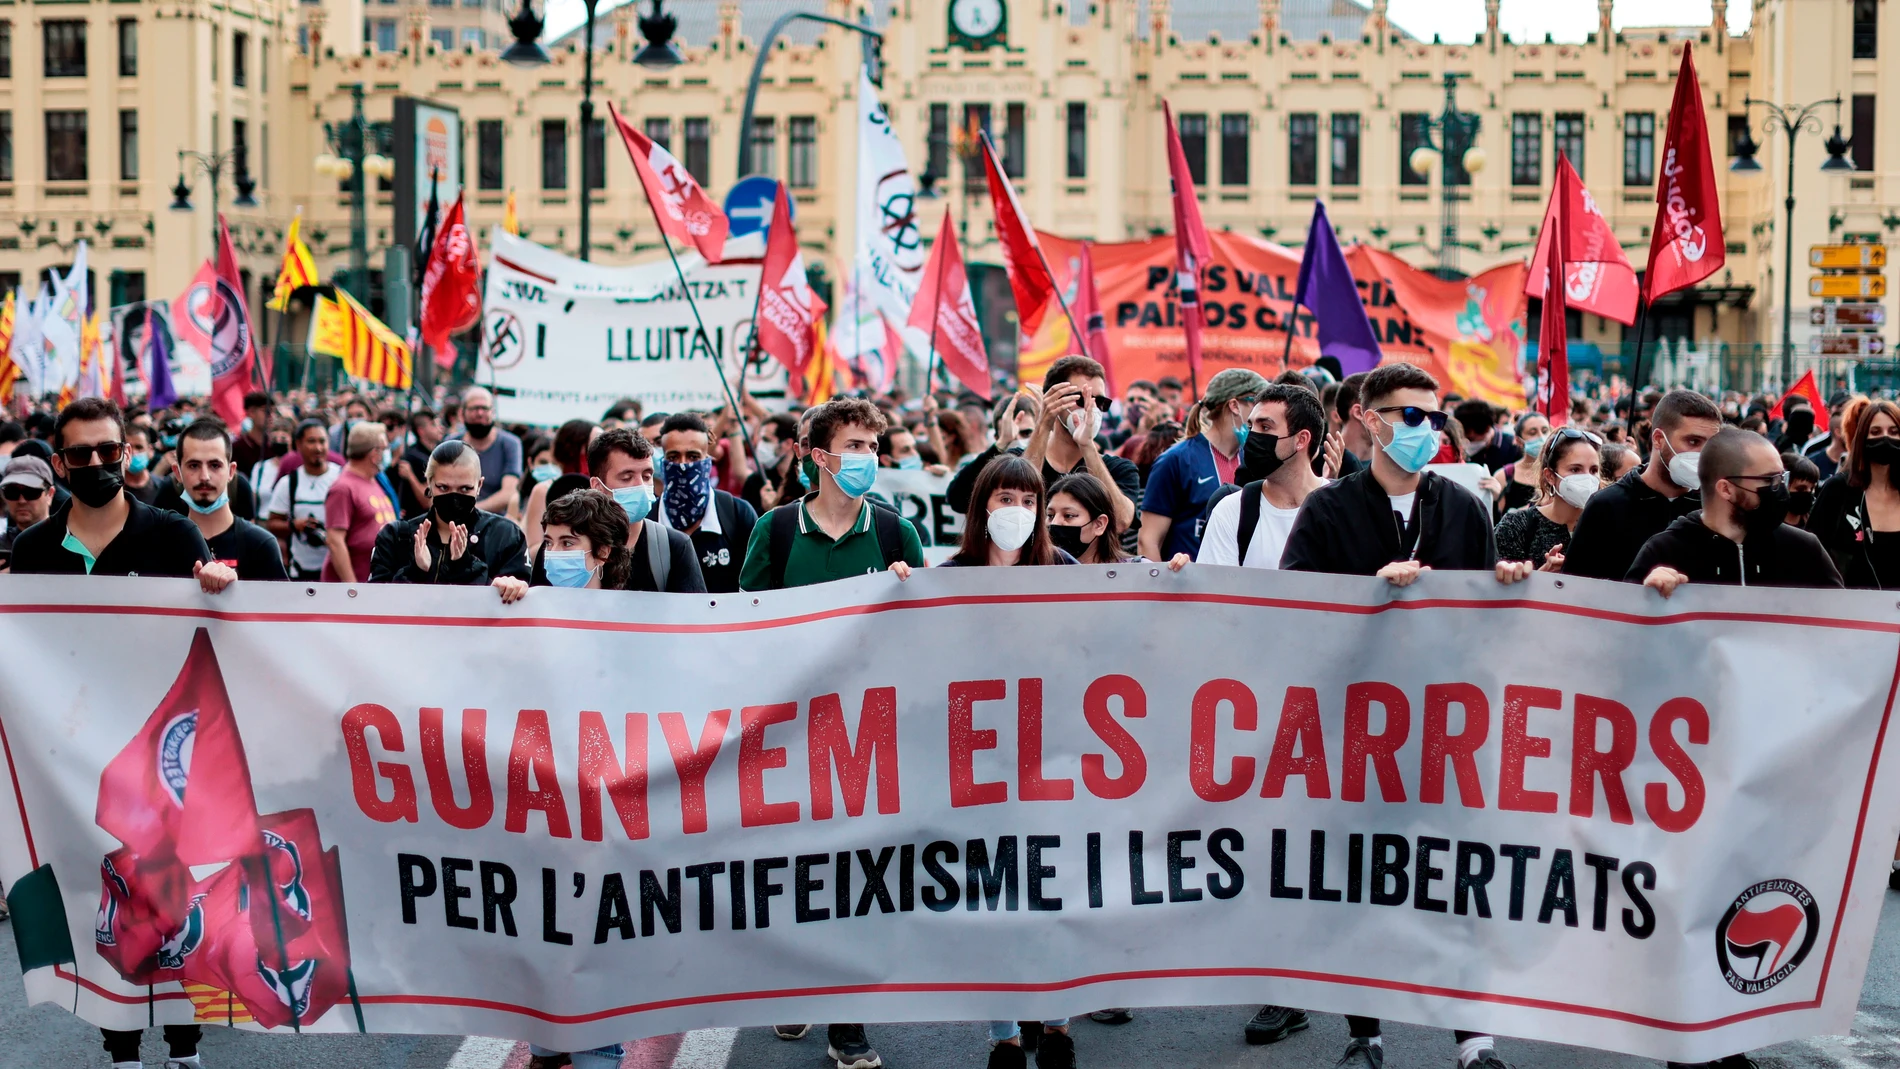 Vista general de la cabecera de la manifestación celebrada por la Comissió 9 d'Octubre, integrada por partidos, sindicatos y otras organizaciones de izquierda, para denunciar la violencia fascista.